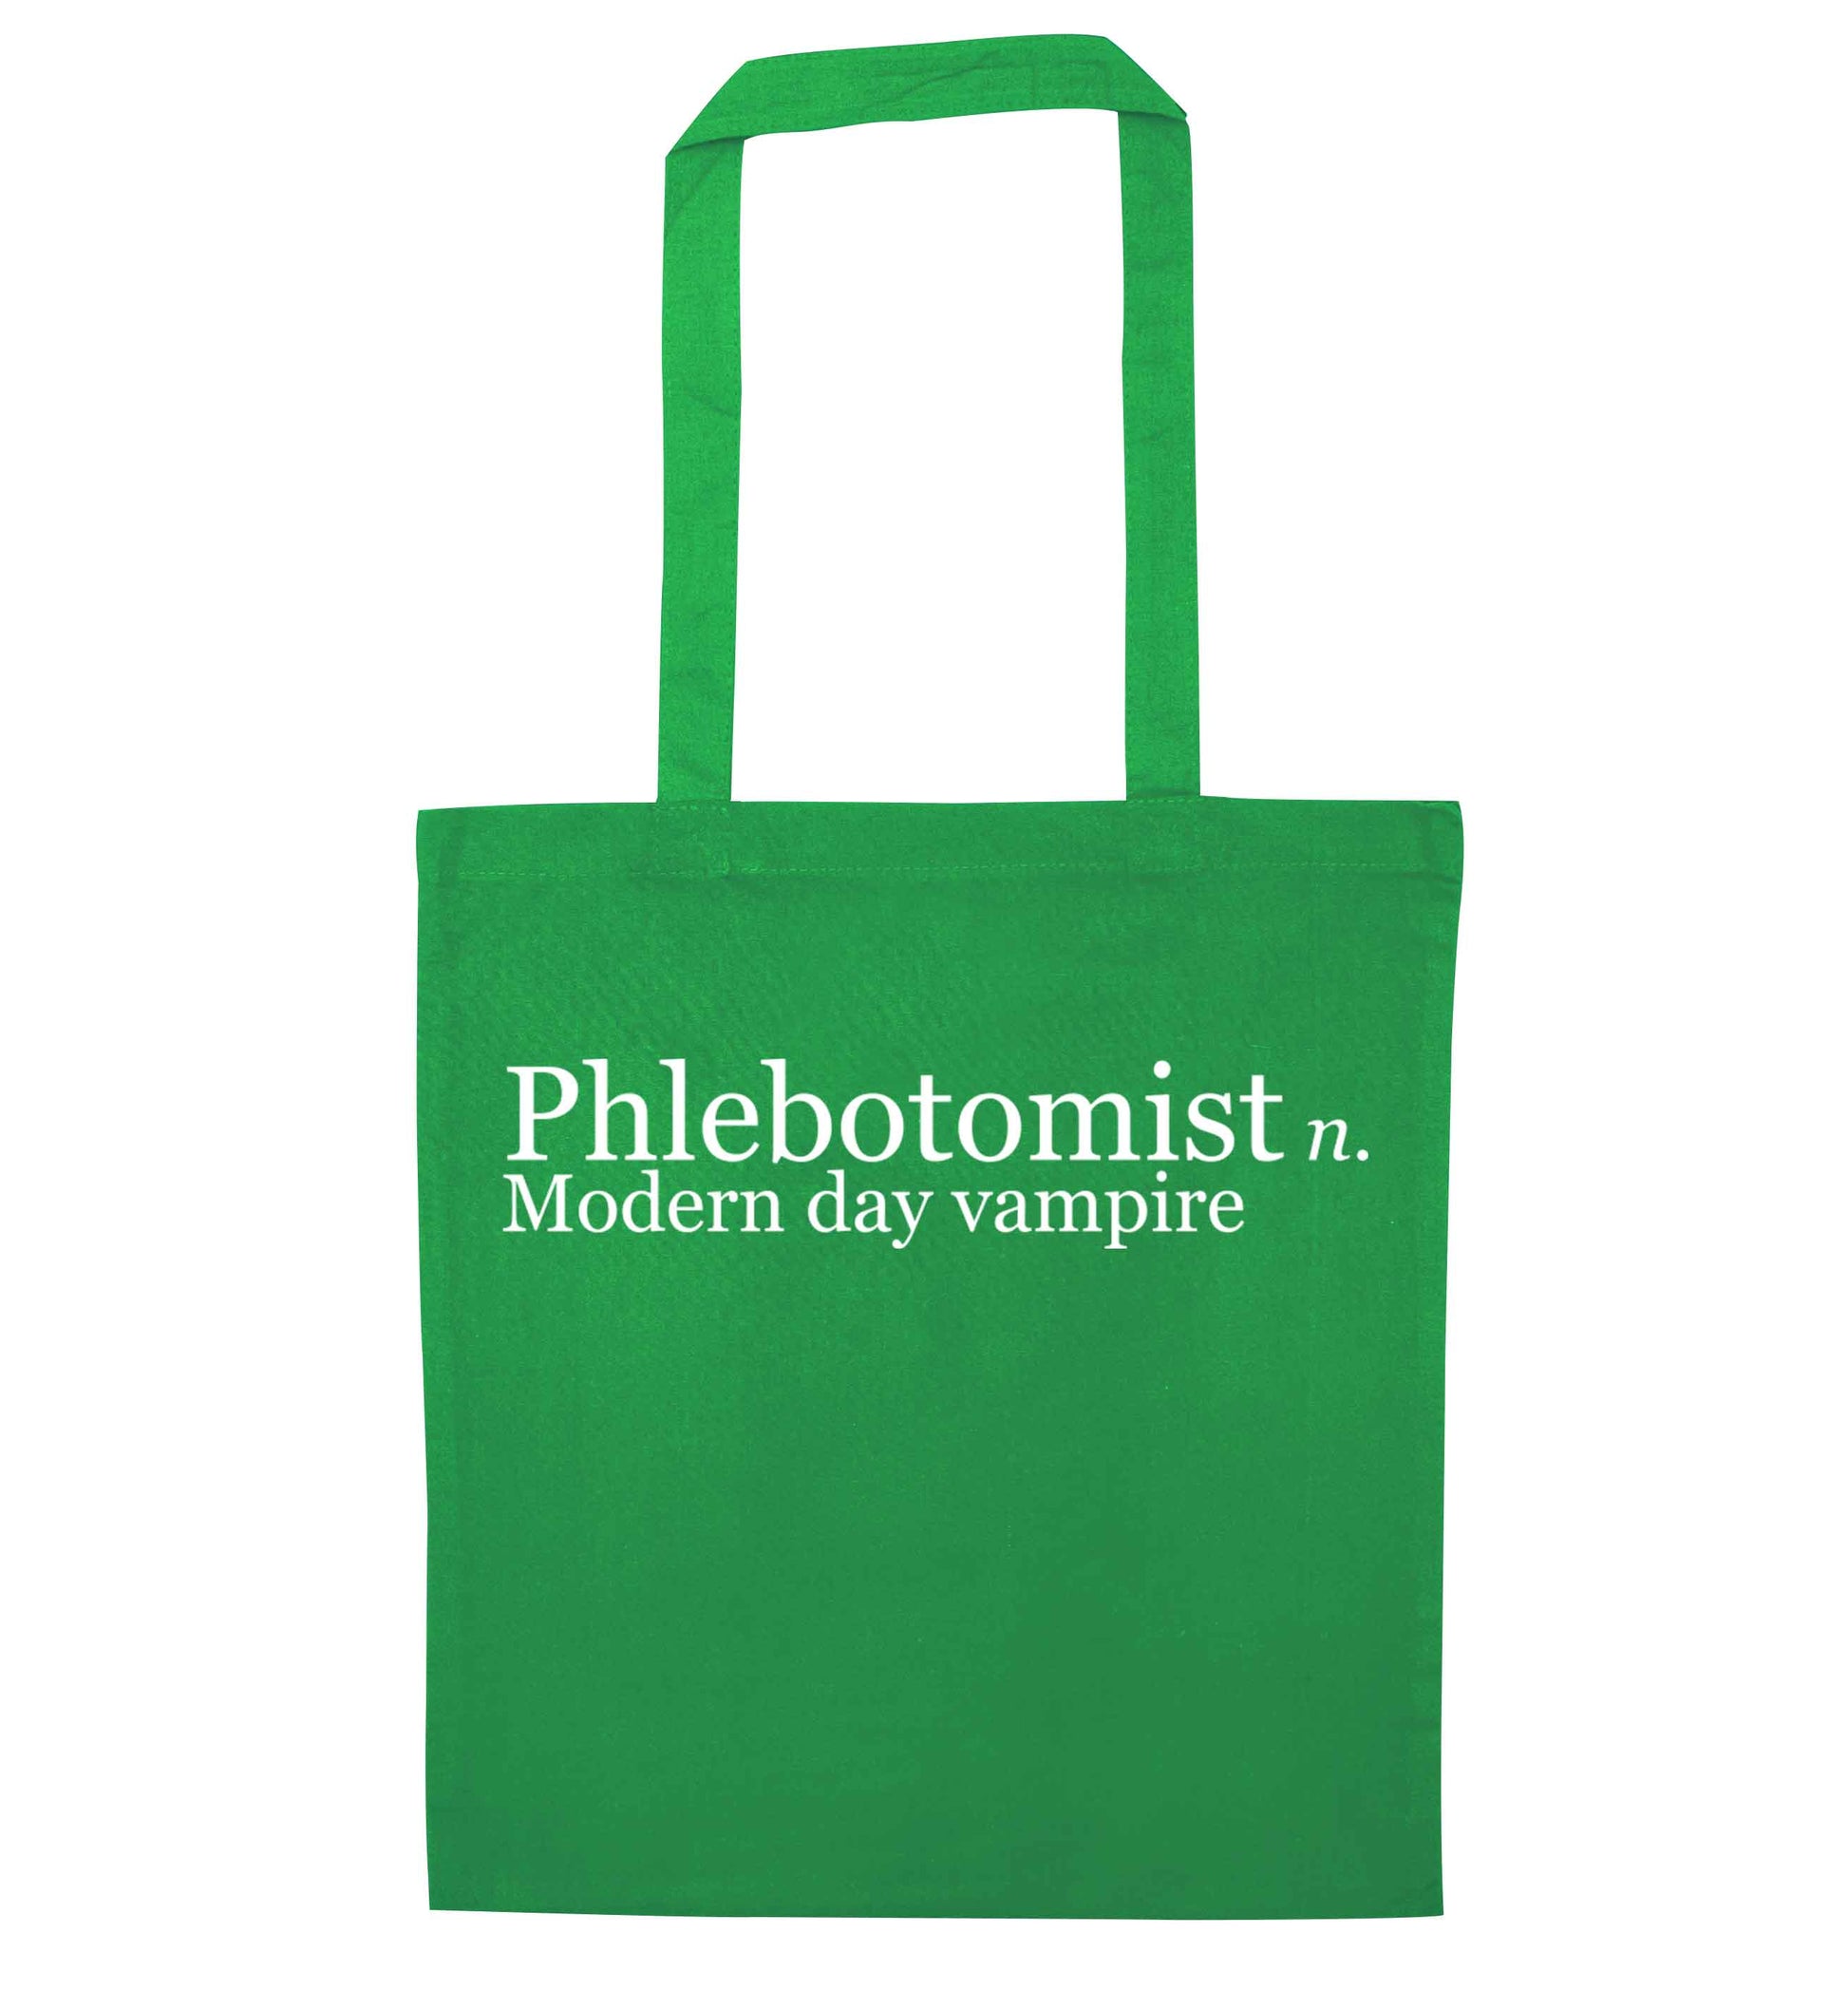 Phlebotomist - Modern day vampire green tote bag